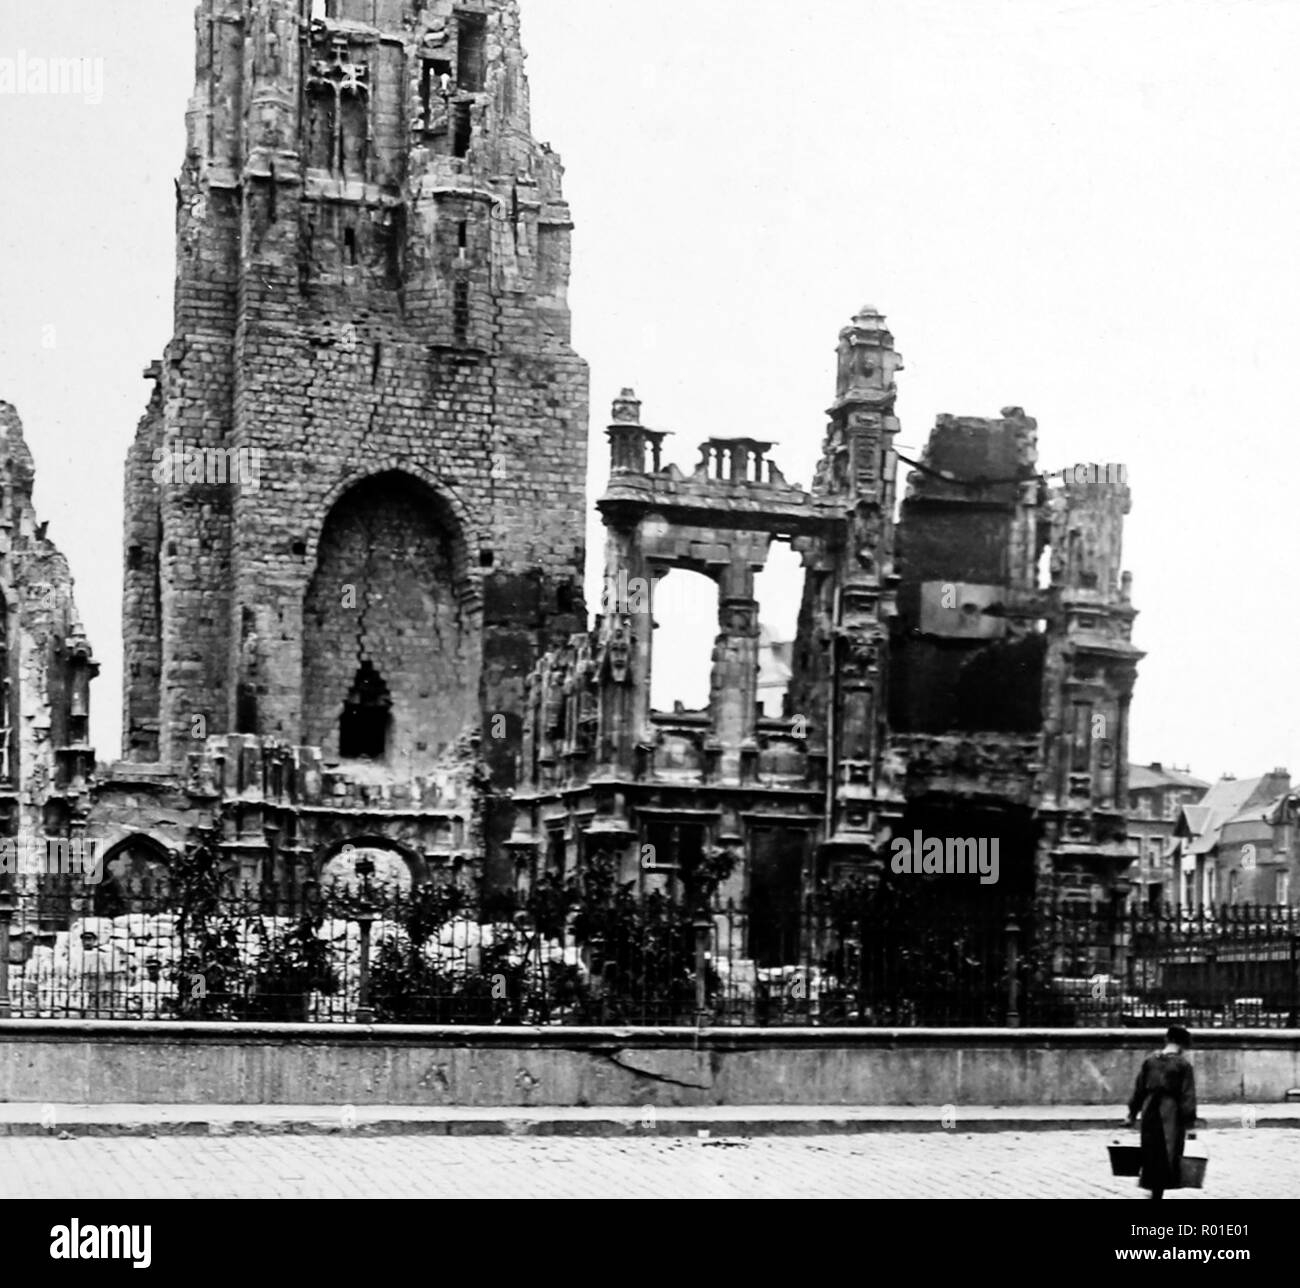 La Cathédrale d'Arras et l'Hôtel de Ville pendant la Première Guerre mondiale Banque D'Images